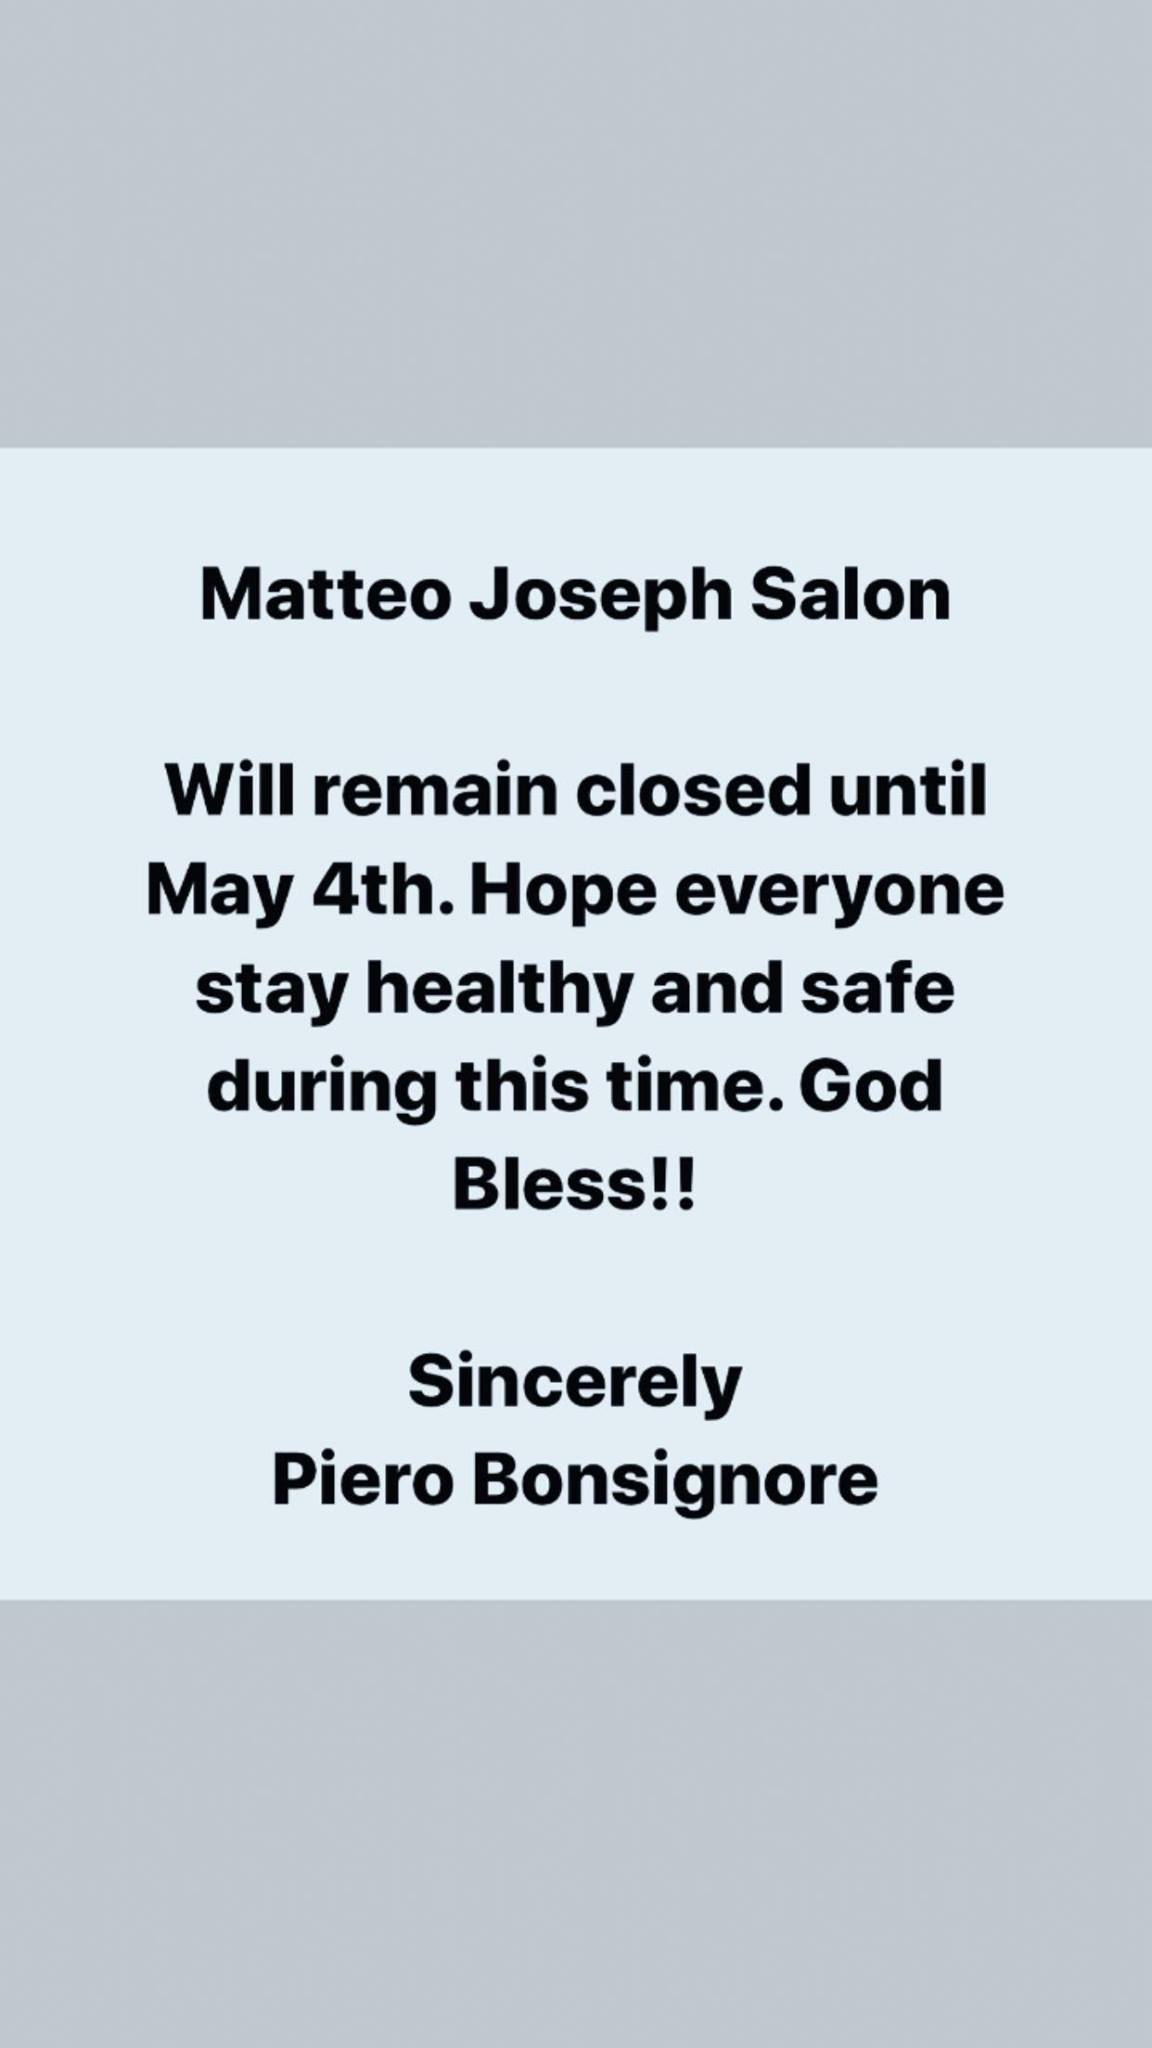 Matteo Joseph Salon 572 Columbian St, South Weymouth Massachusetts 02190